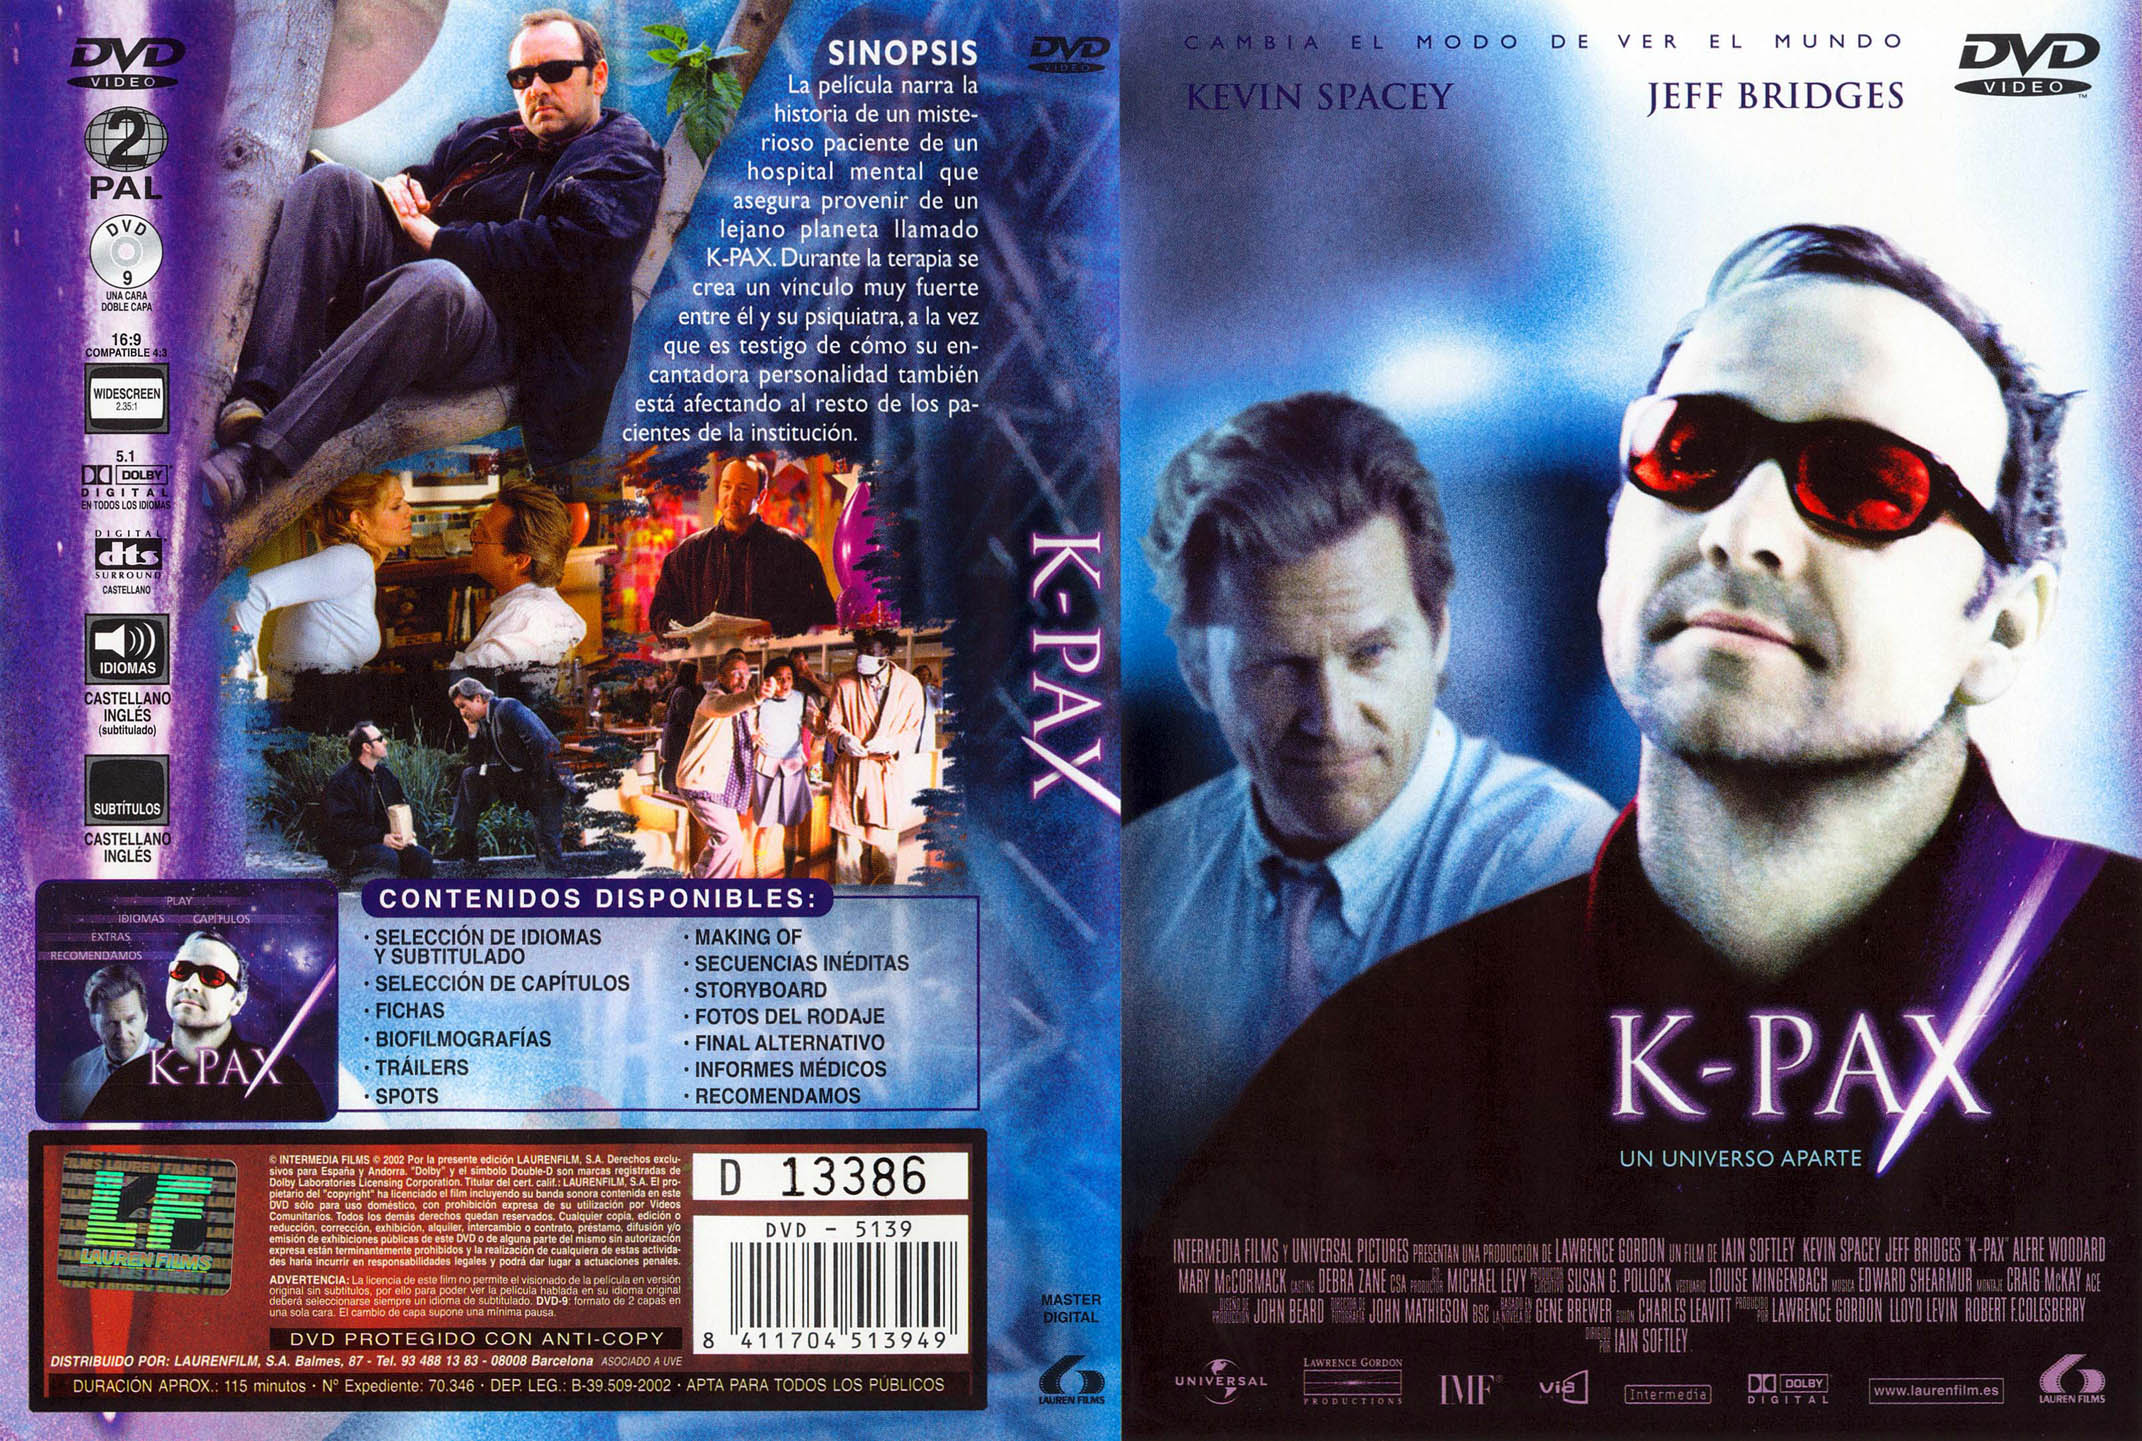 "K-PAX" Kevin Spacey'nin mükemmel oyunculuğu ve sıradışı bir
bilimkurgu-dram izlemeniz tavsiyedir...